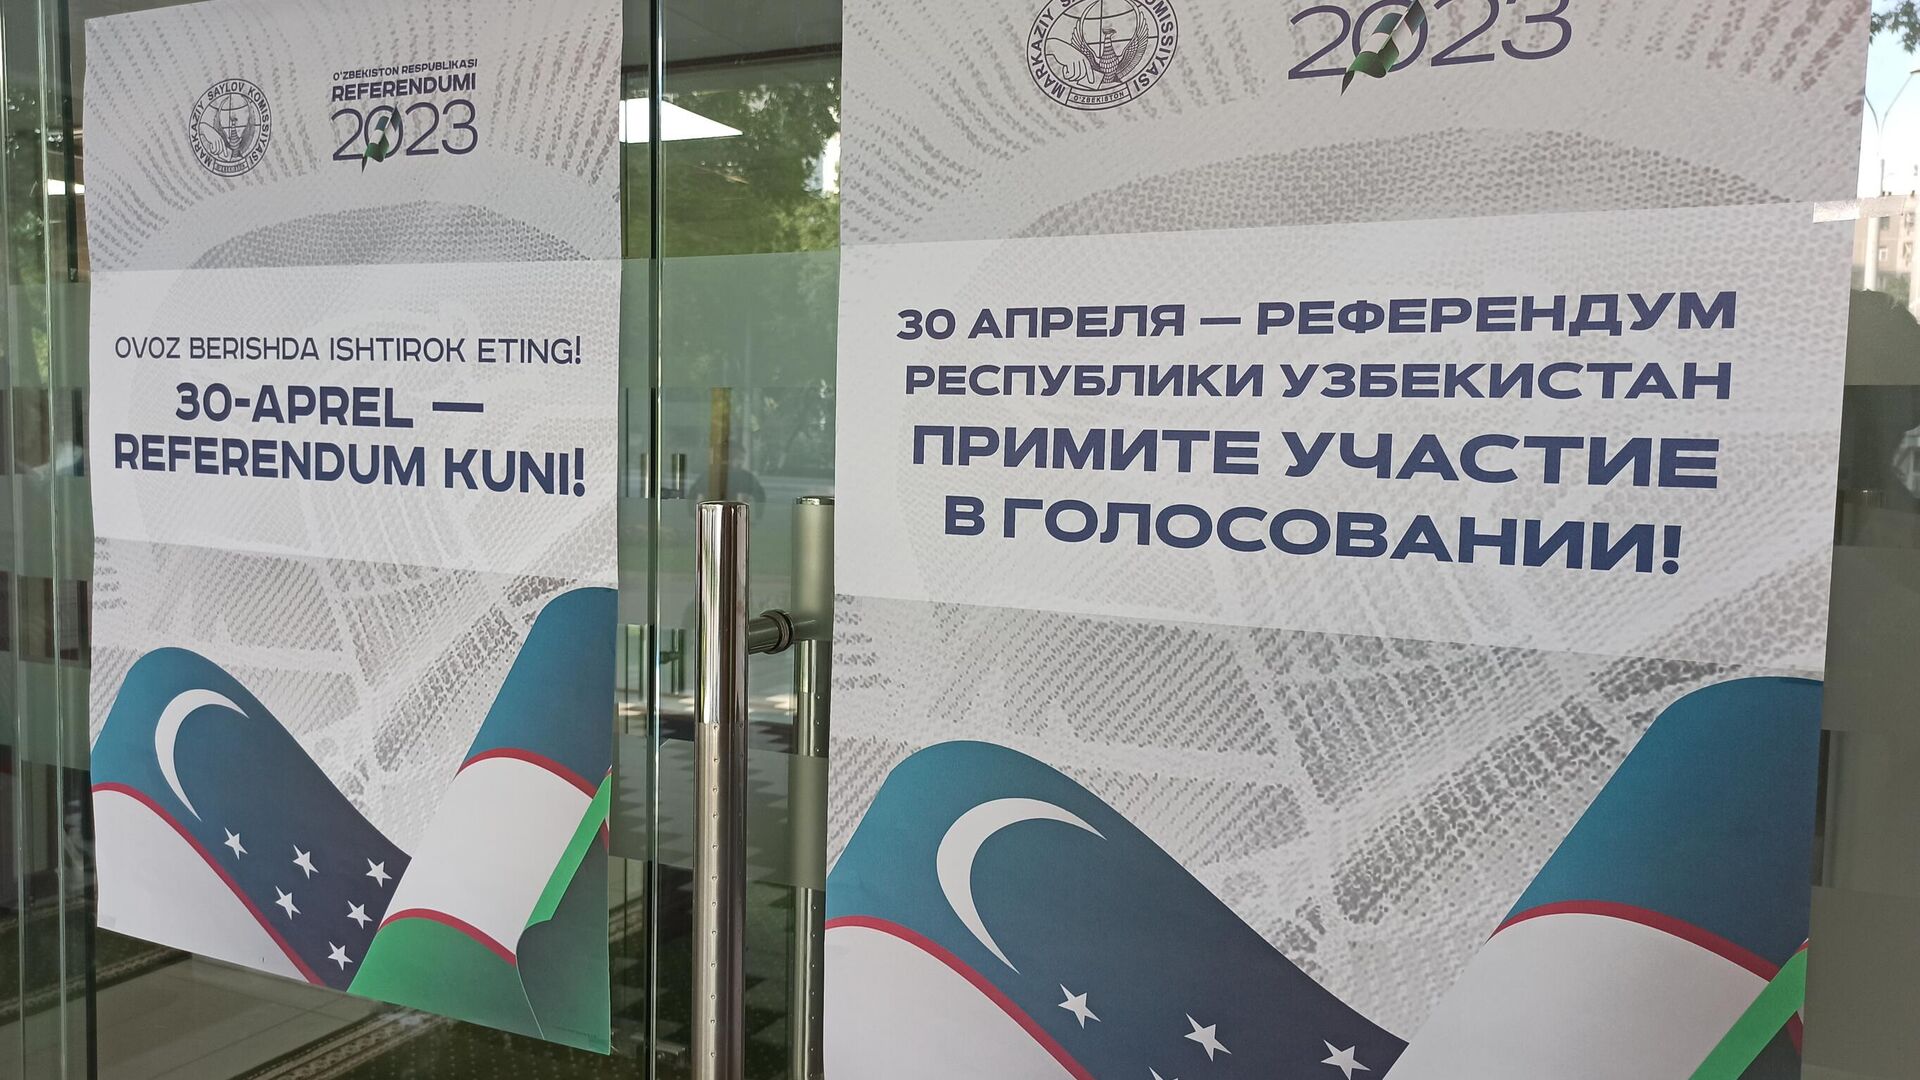 Референдум по внесению изменений и дополнений в Конституцию Республики Узбекистан проходит 30 апреля.  - Sputnik Узбекистан, 1920, 30.04.2023